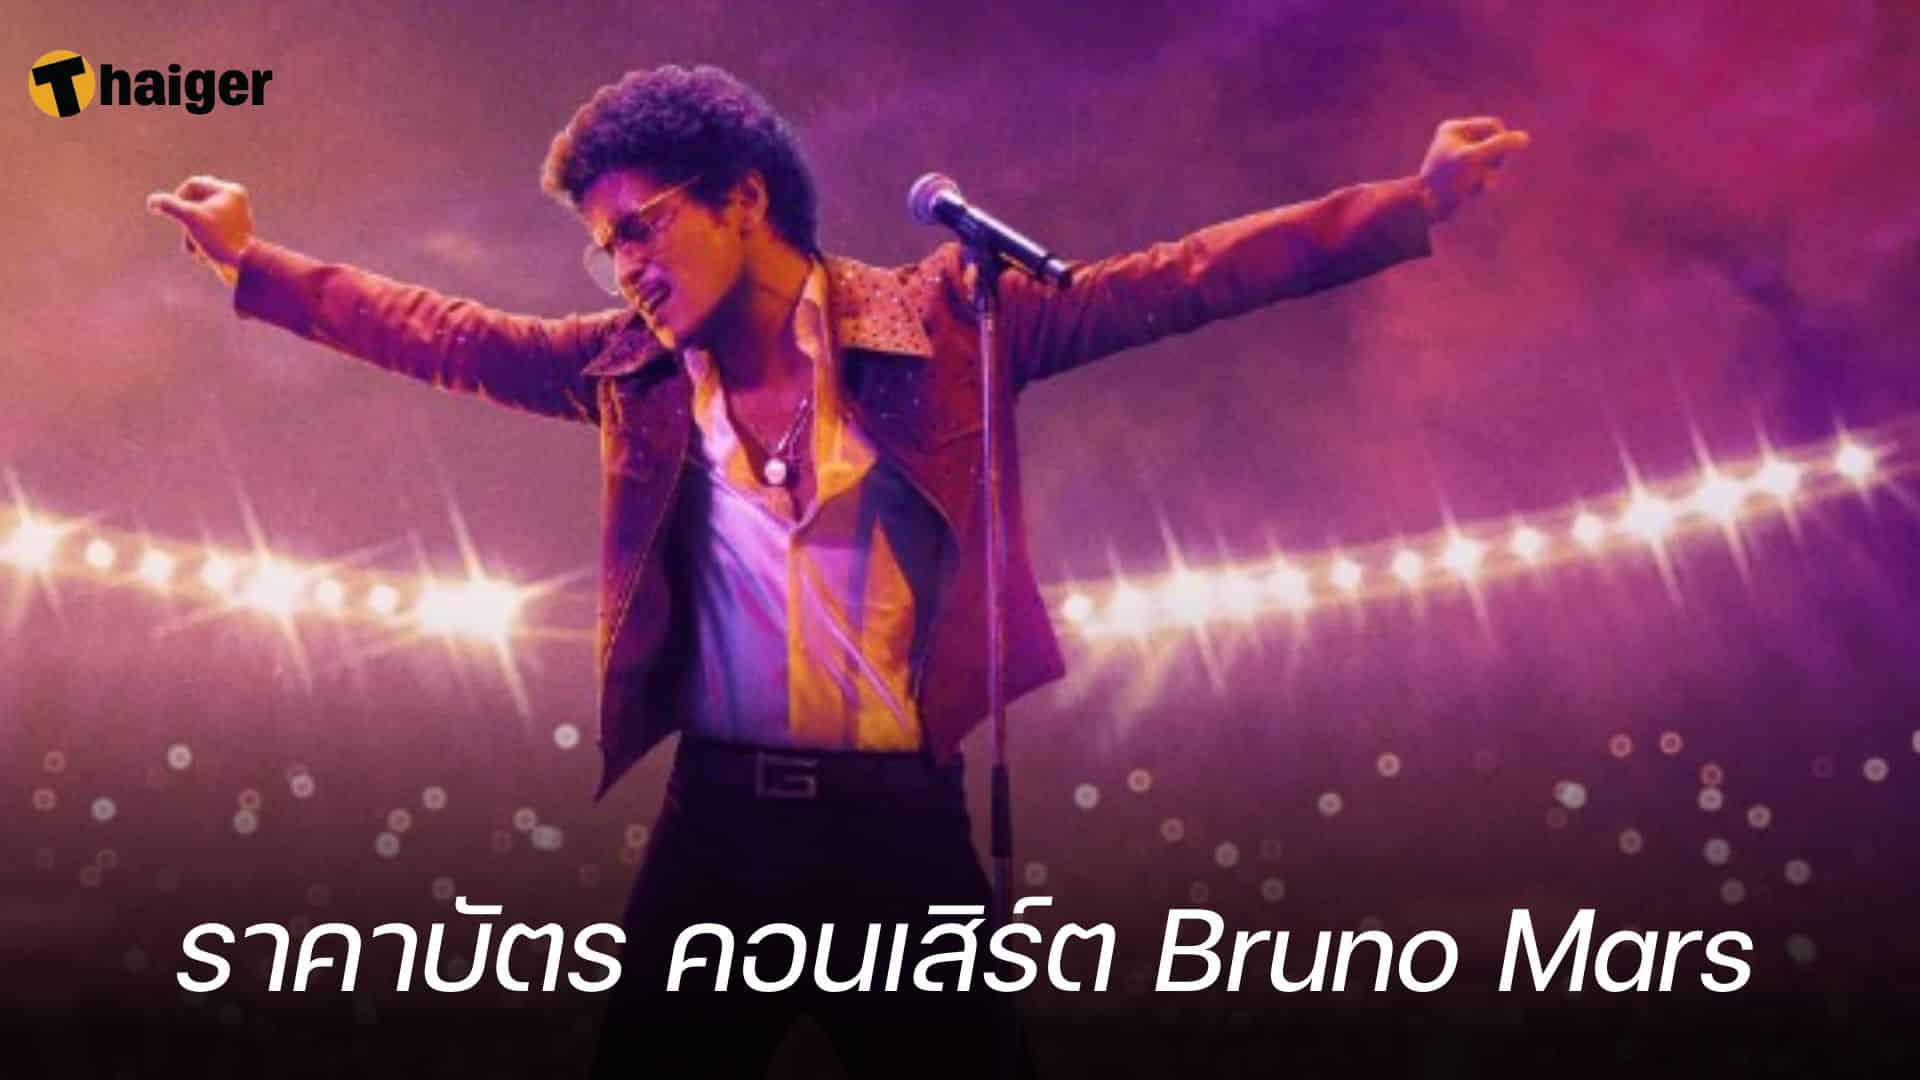 ราคาบัตร คอนเสิร์ต Bruno Mars